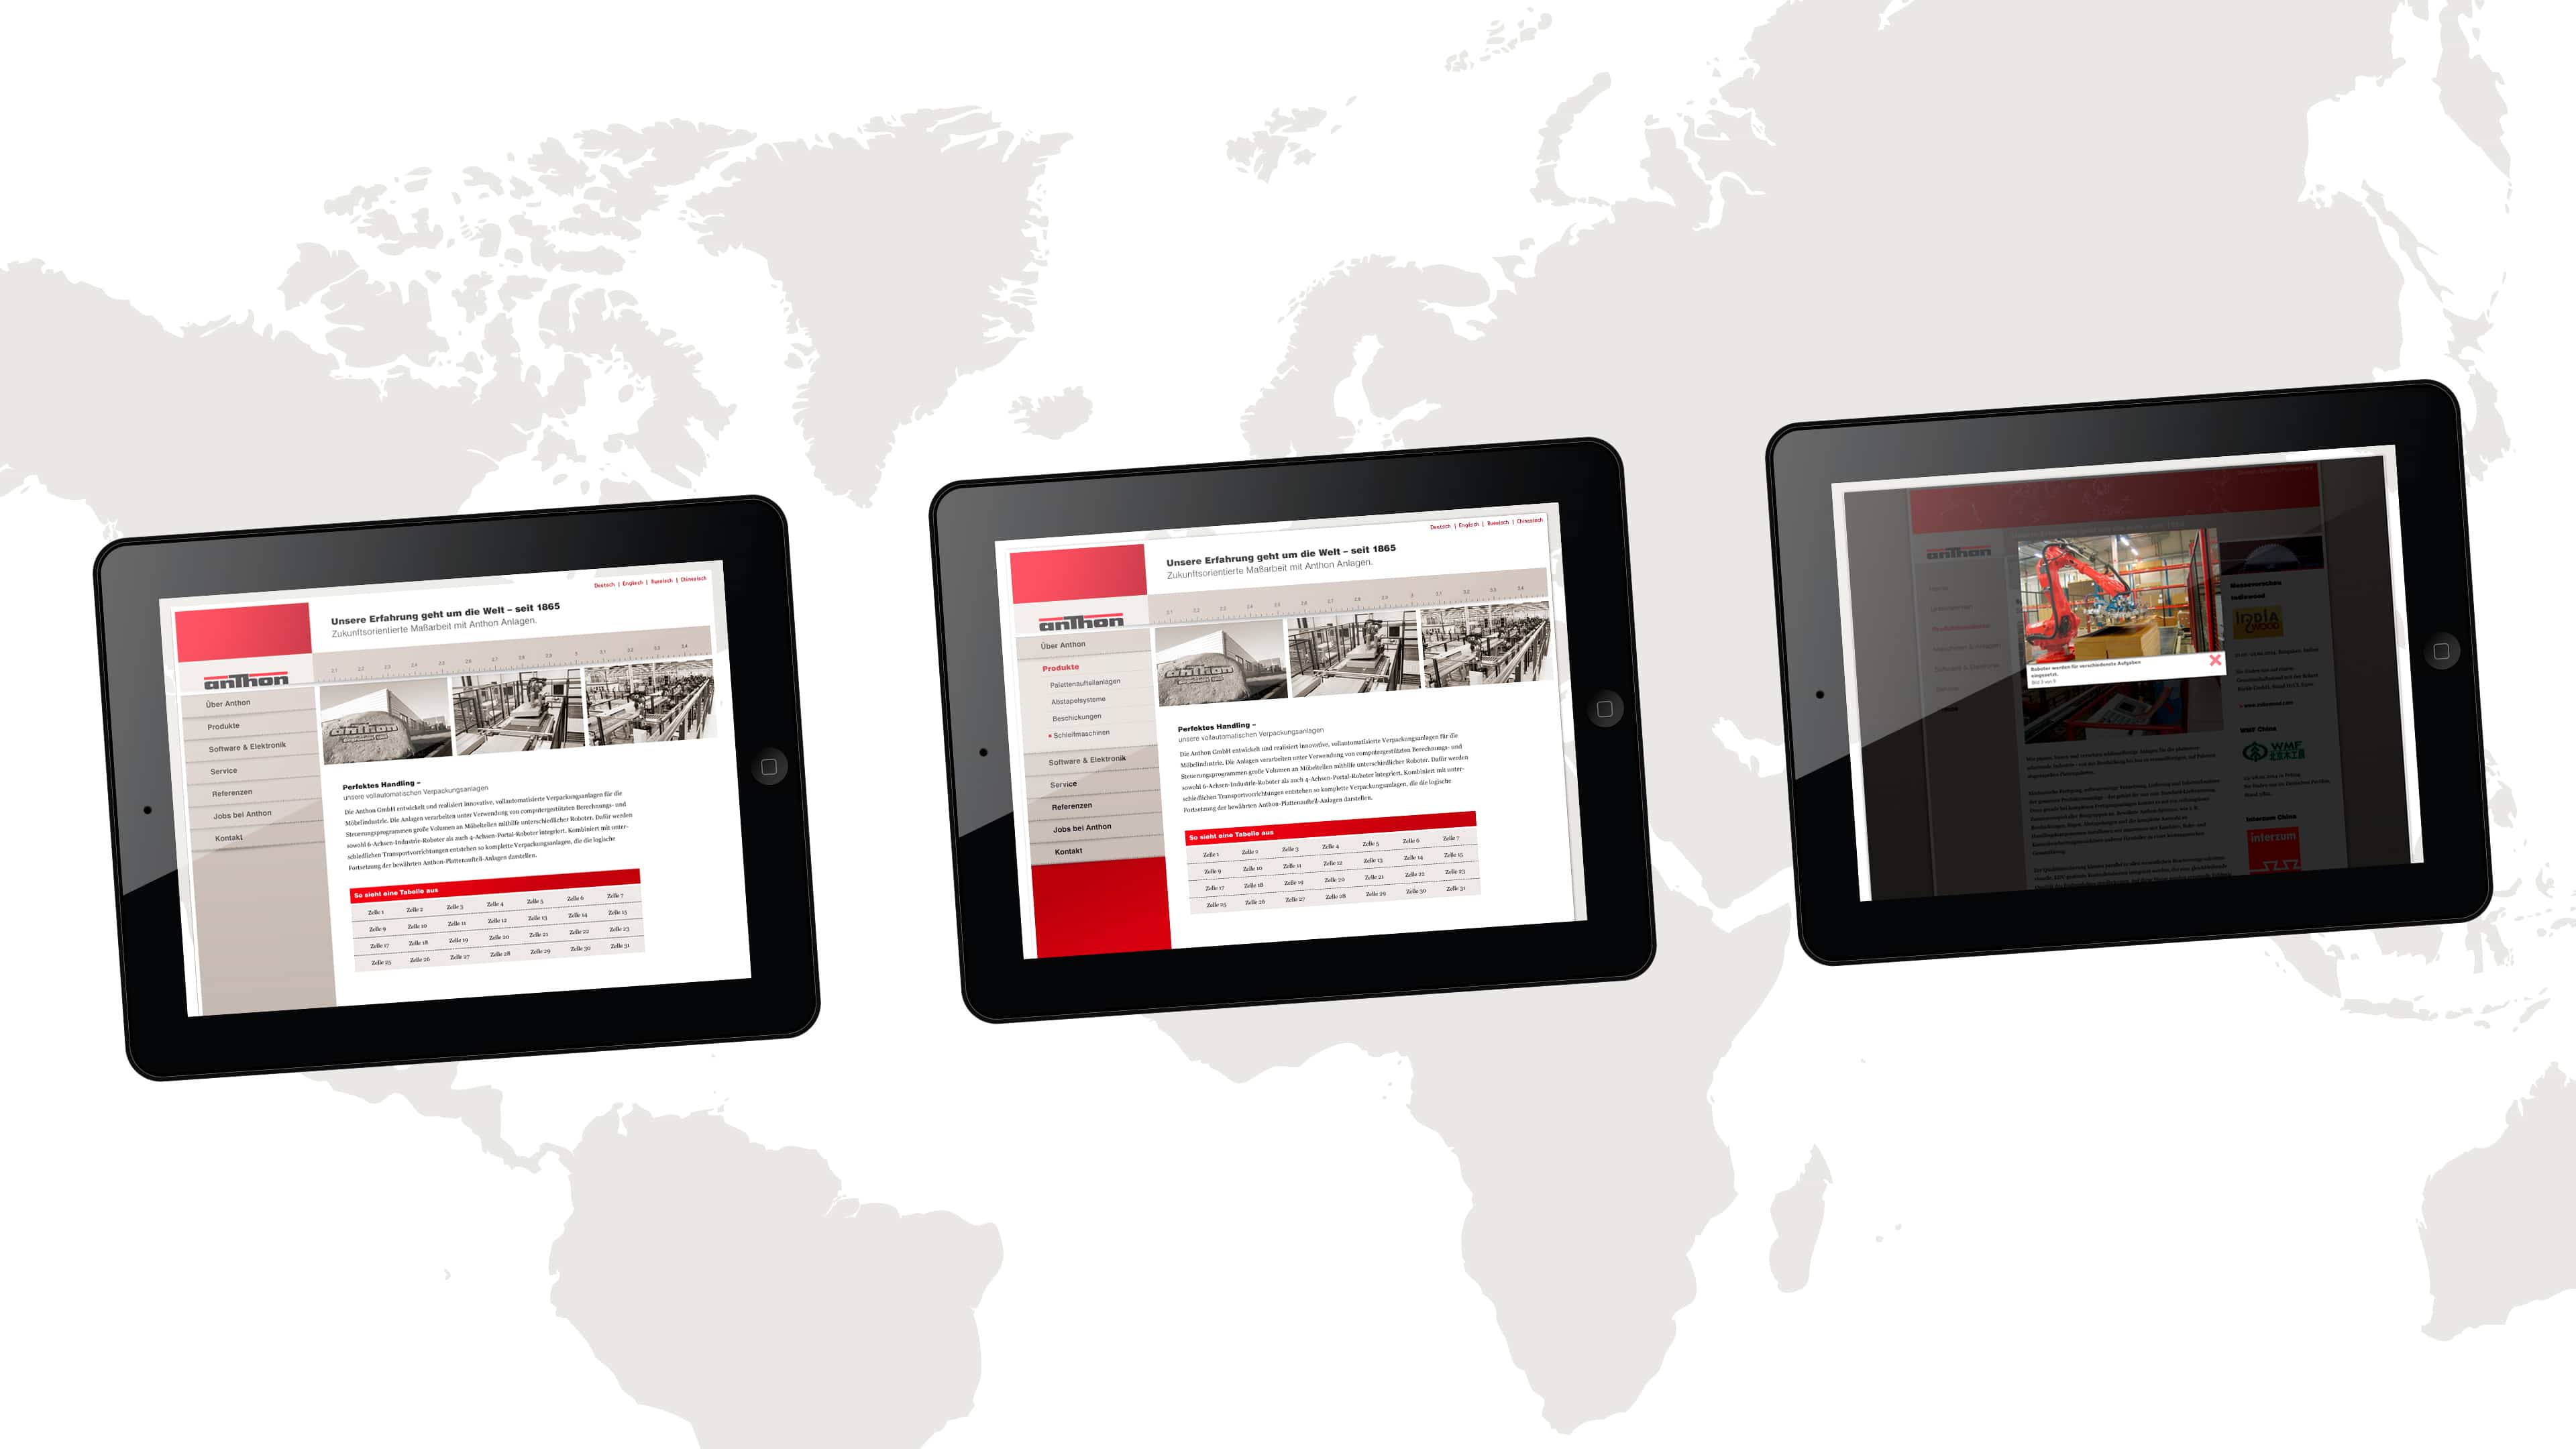 Drei Tablets zeigen Website der anthon GmbH vor weiß-grauer Weltkarte